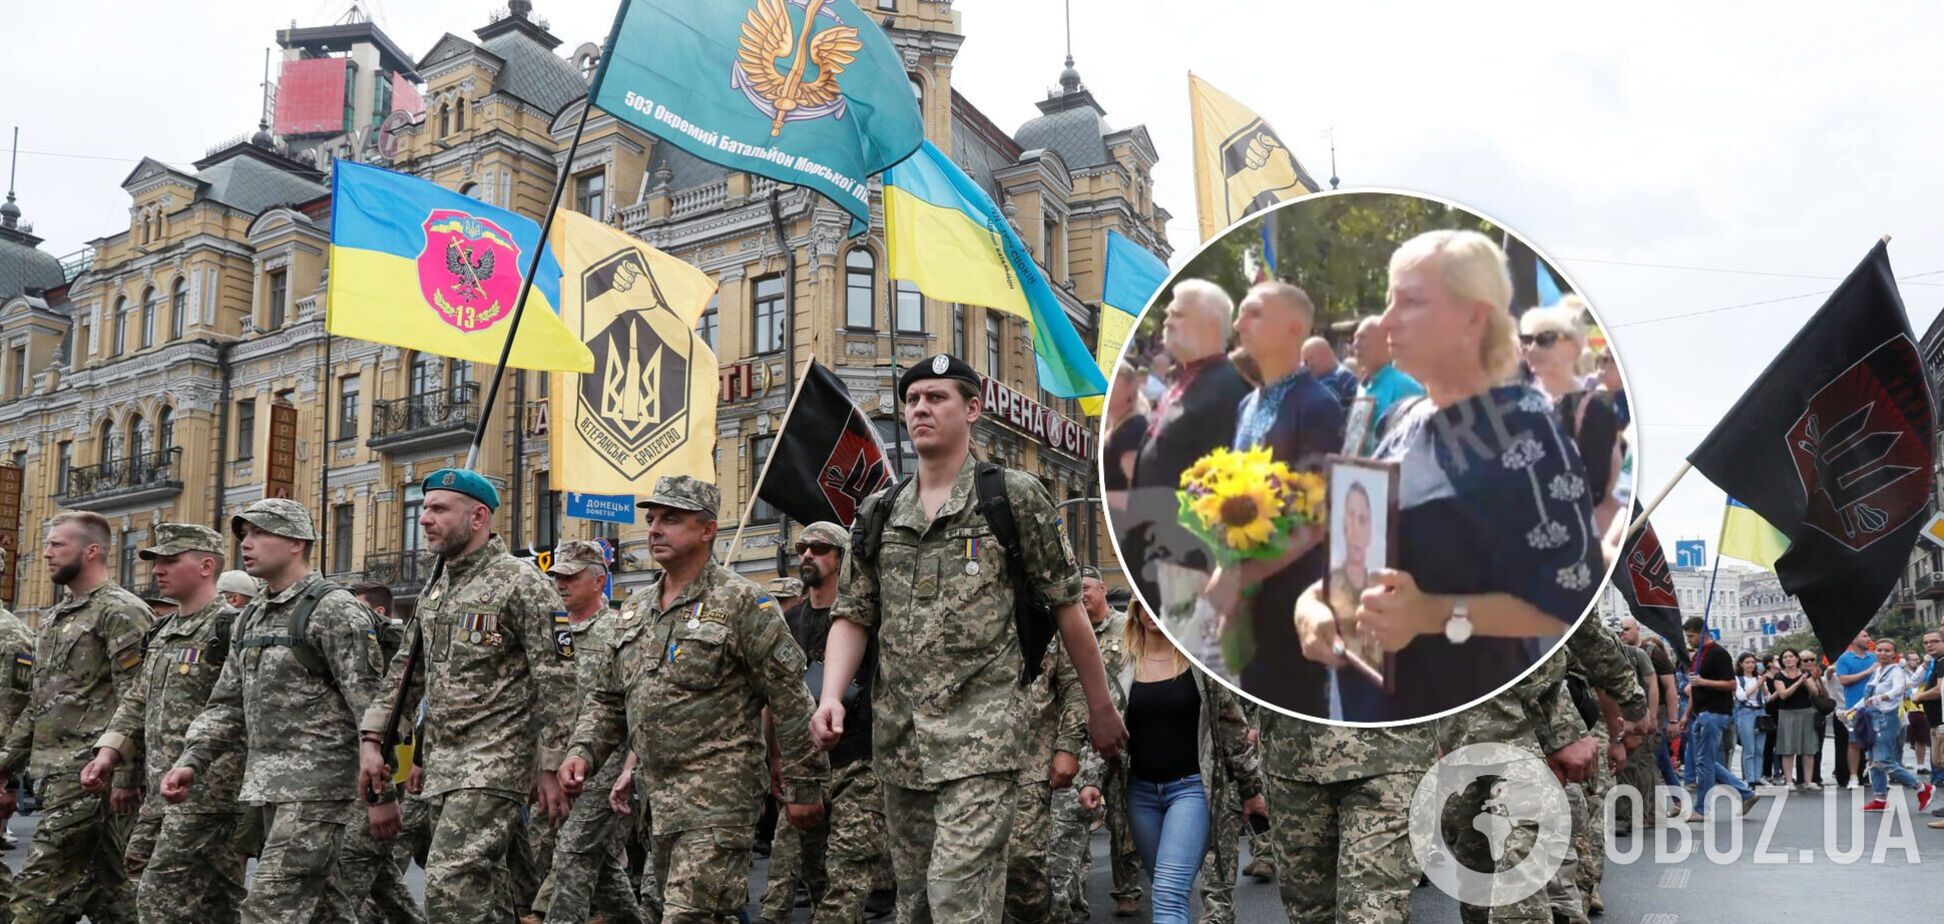 Сльози і слова подяки: українці підтримали сім'ї загиблих військових під час Маршу захисників. Відео